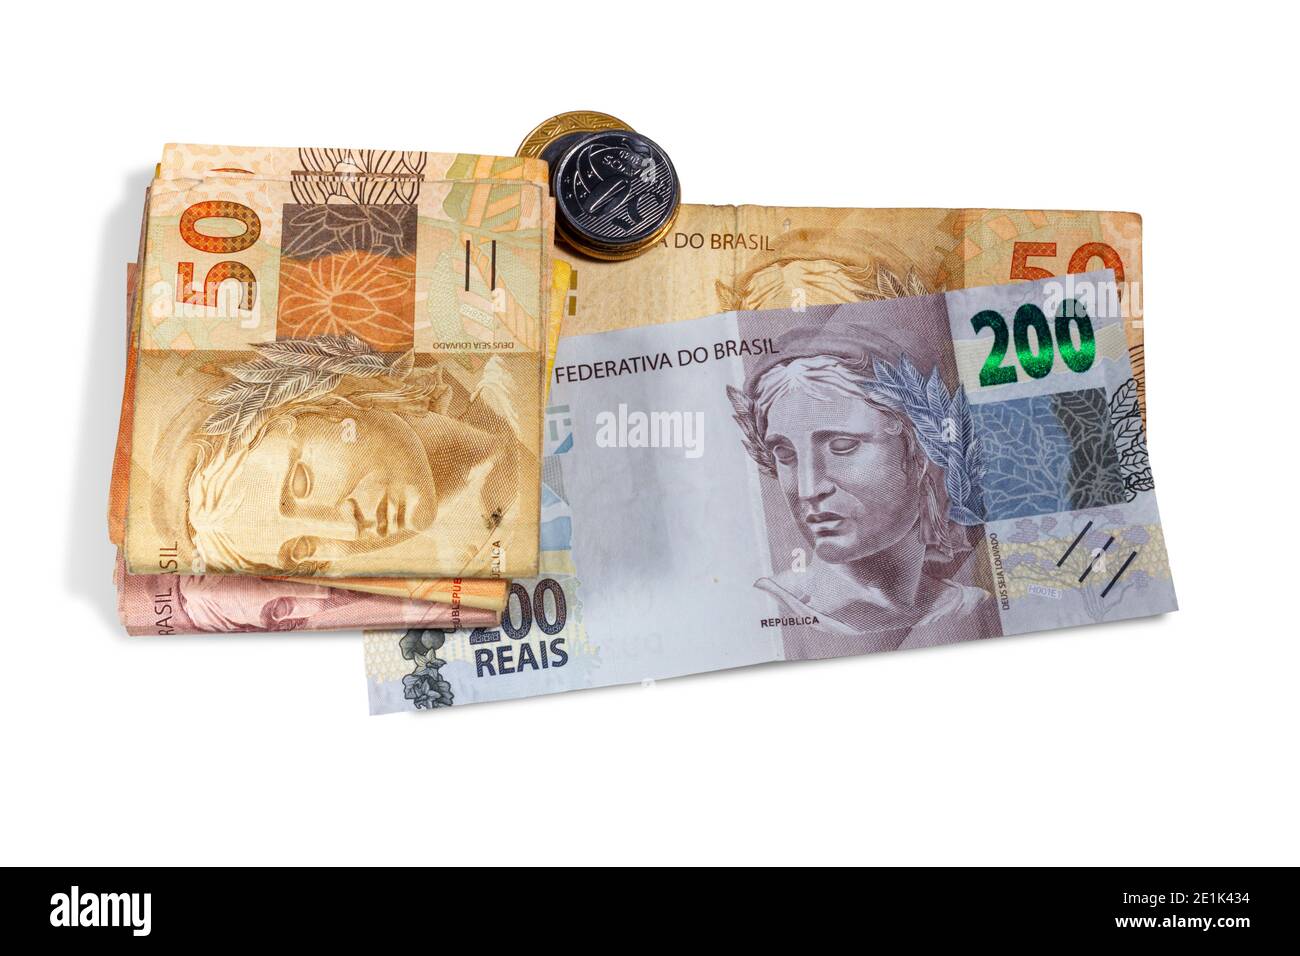 Monnaie brésilienne et pièces. Deux cents projets de loi, dix, vingt et cinquante projets de loi réels. Banque D'Images